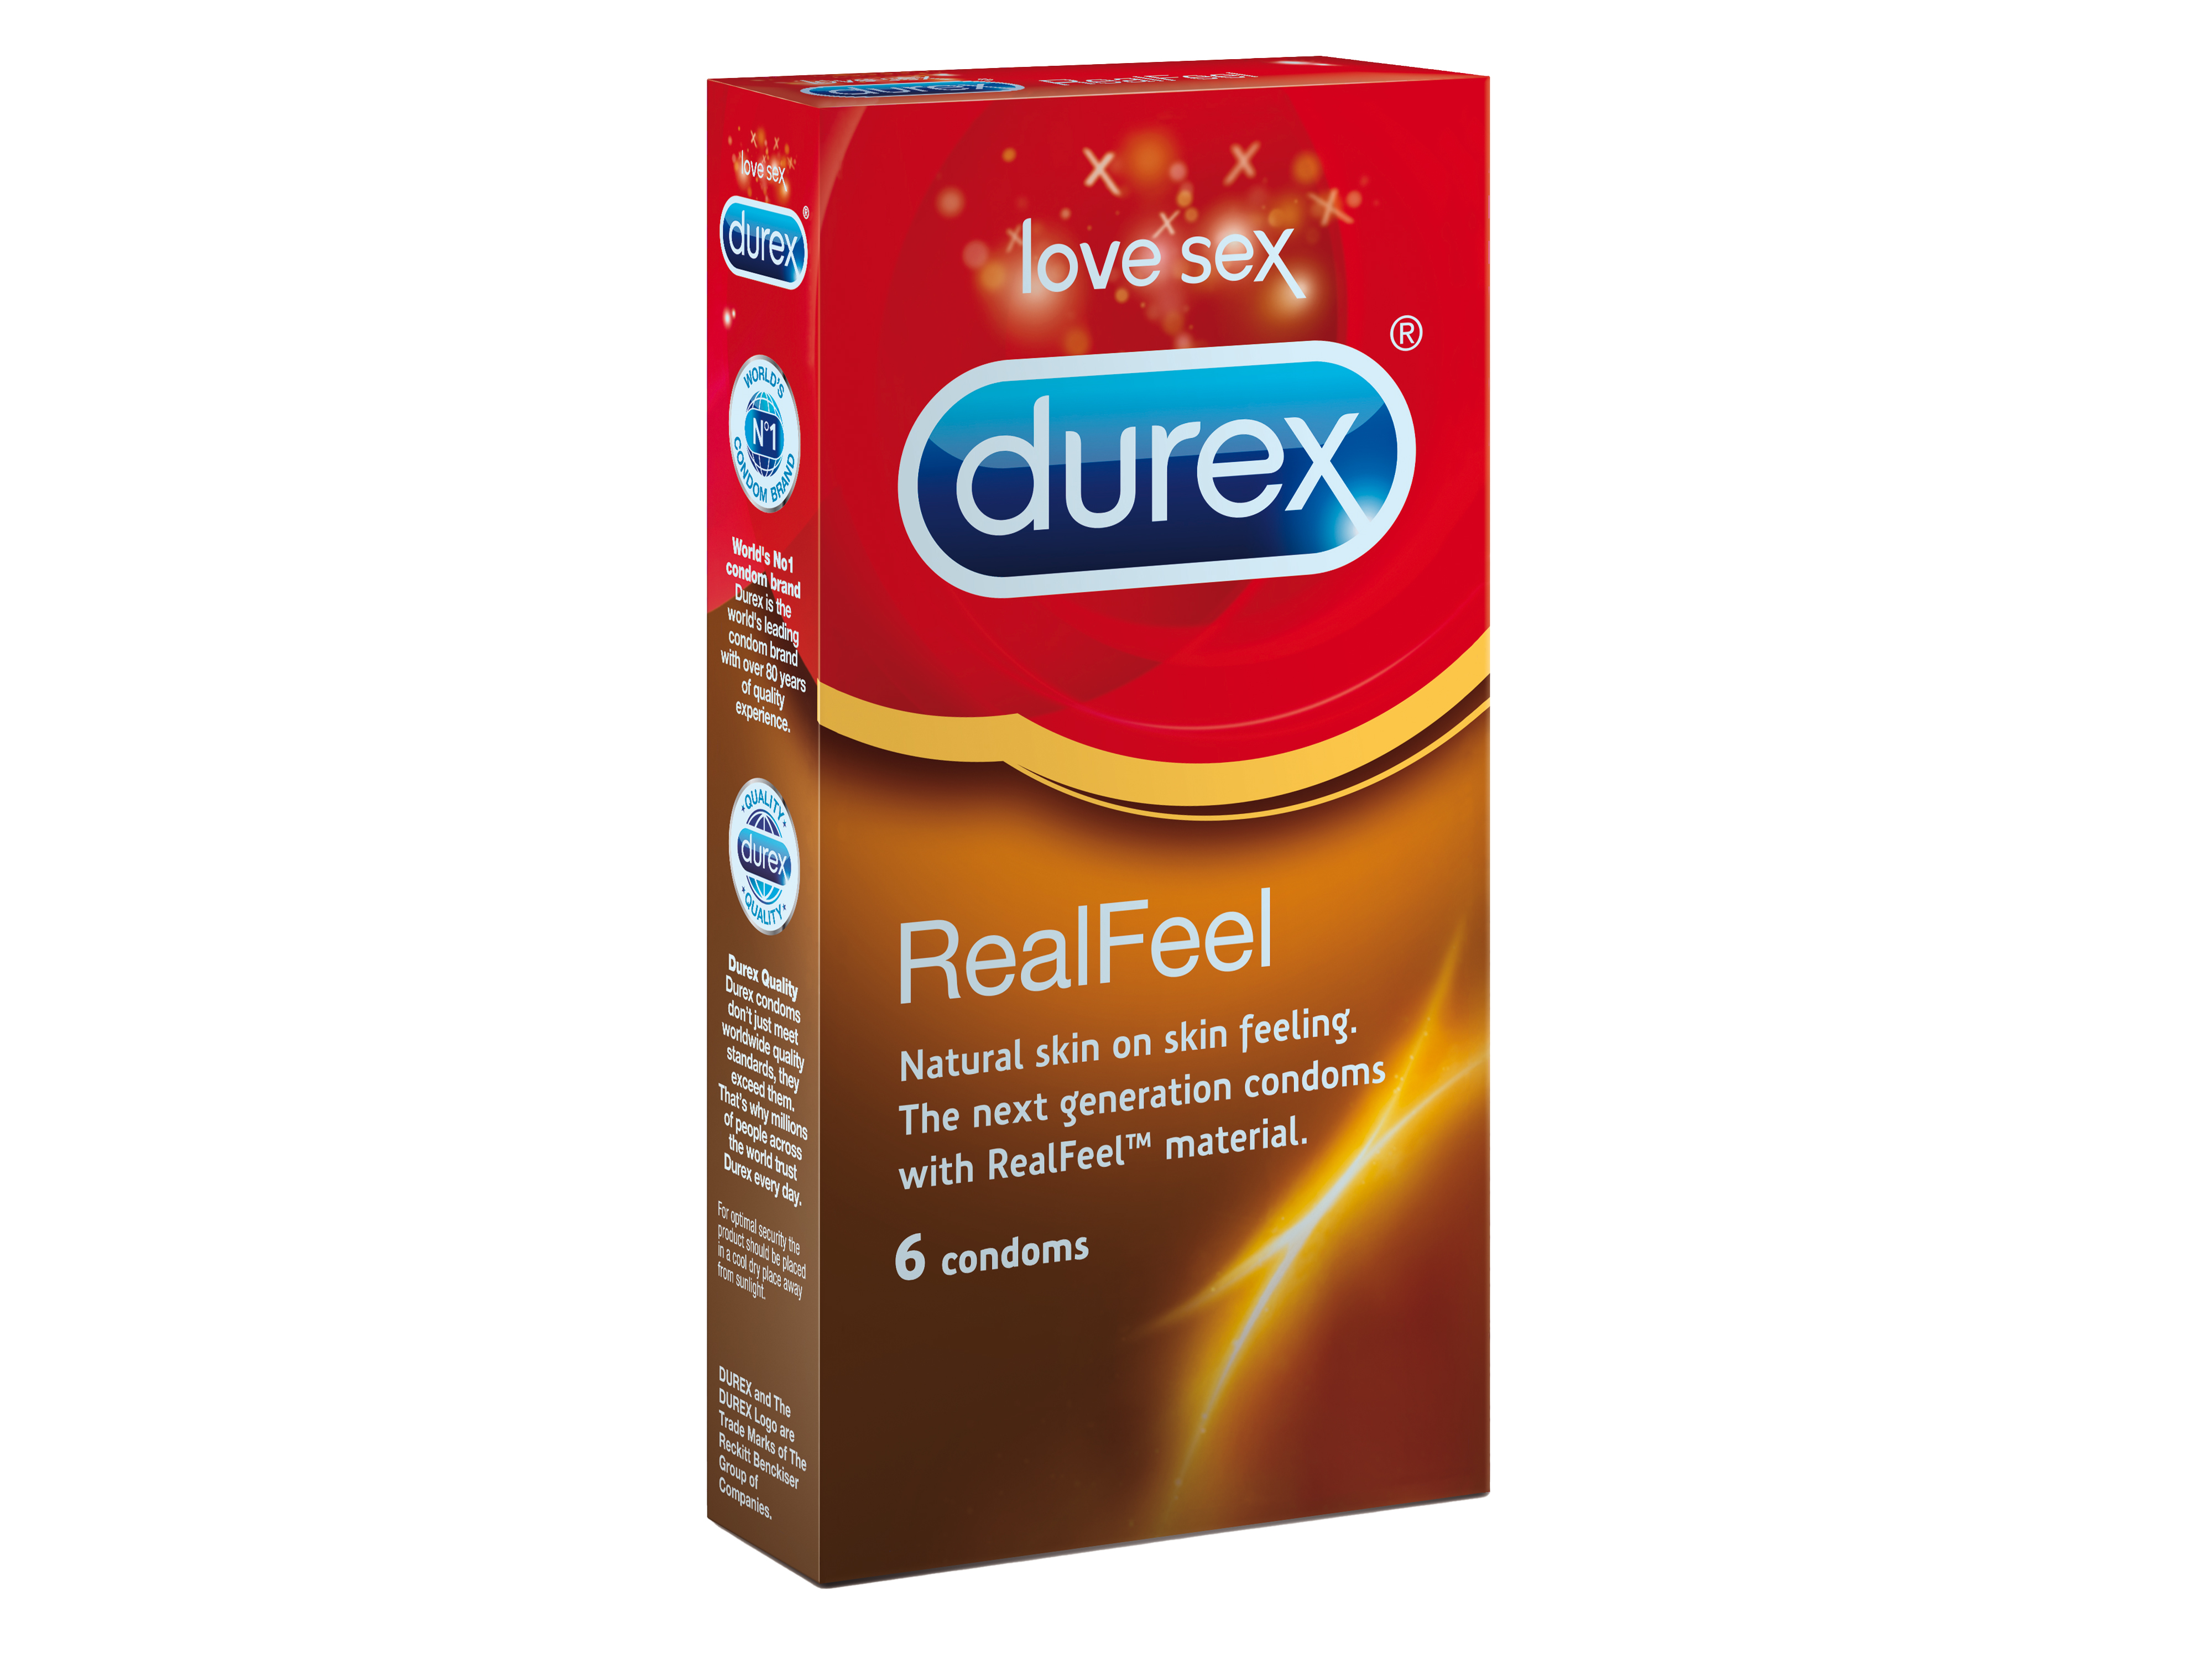 Durex Durex Real Feel kondom, Latexfri kondom, 6 stk.